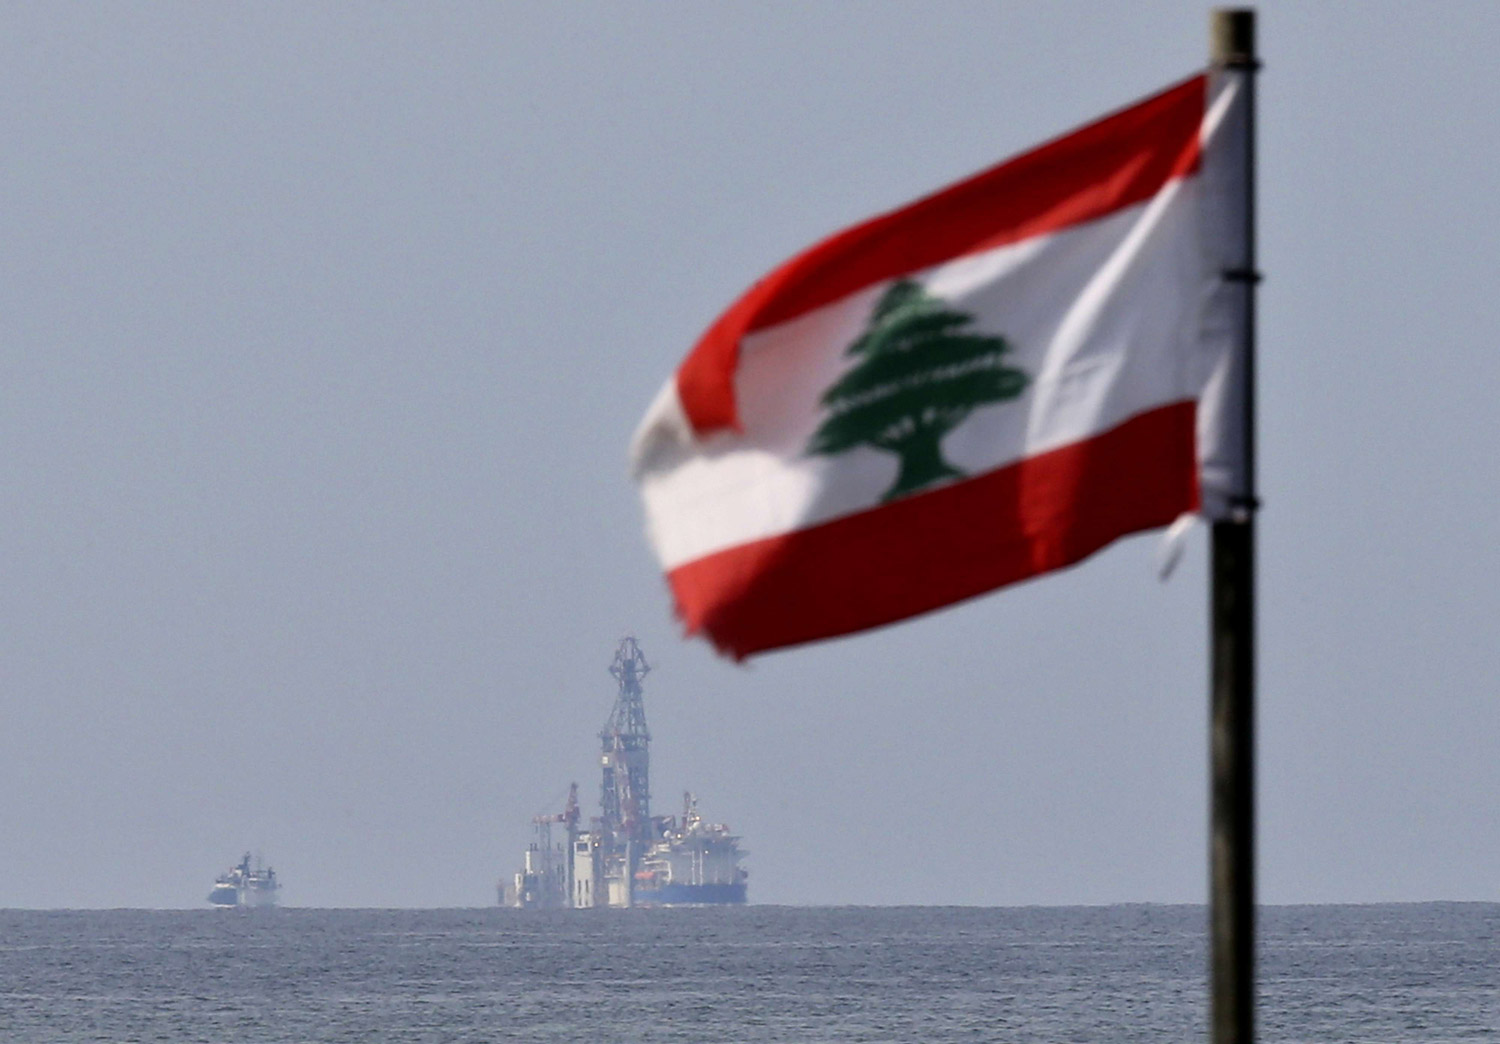 نتائج الحفر في الرقعة 4 تشير لوجود الغاز في مياه لبنان الإقليمية